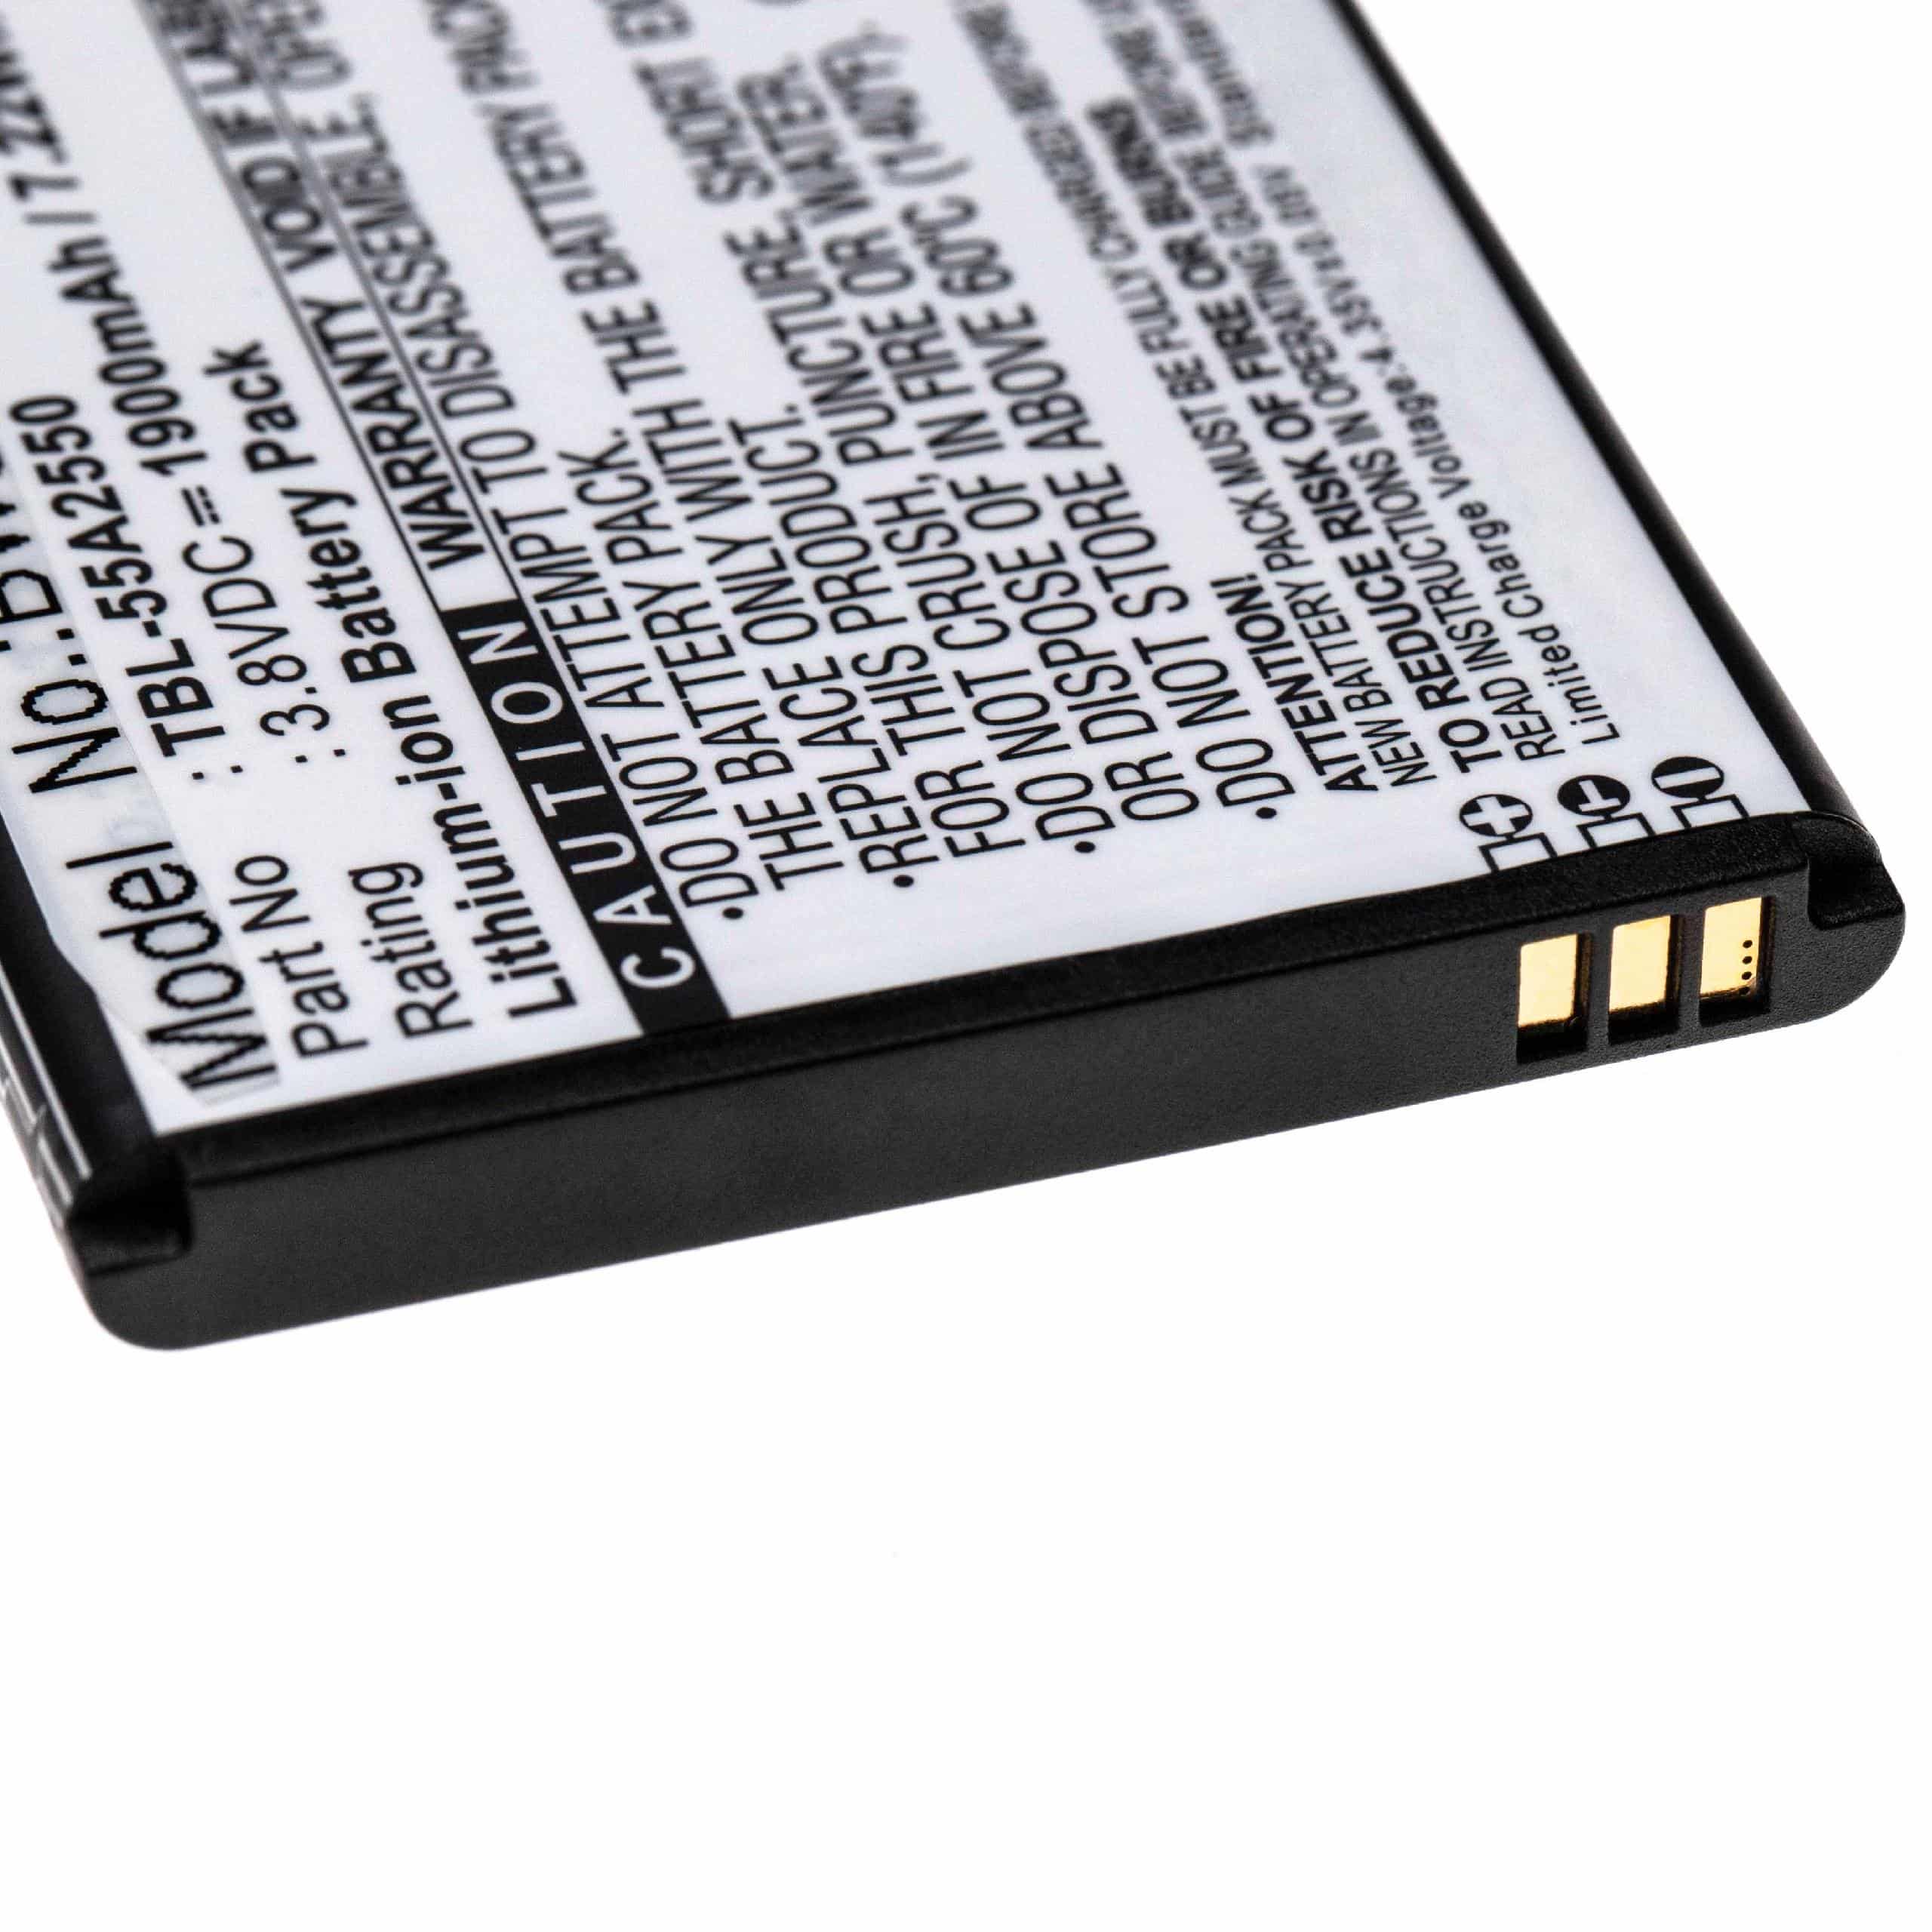 Batterie remplace TP-Link TBL-55A2550 pour routeur modem - 1900mAh 3,8V Li-ion